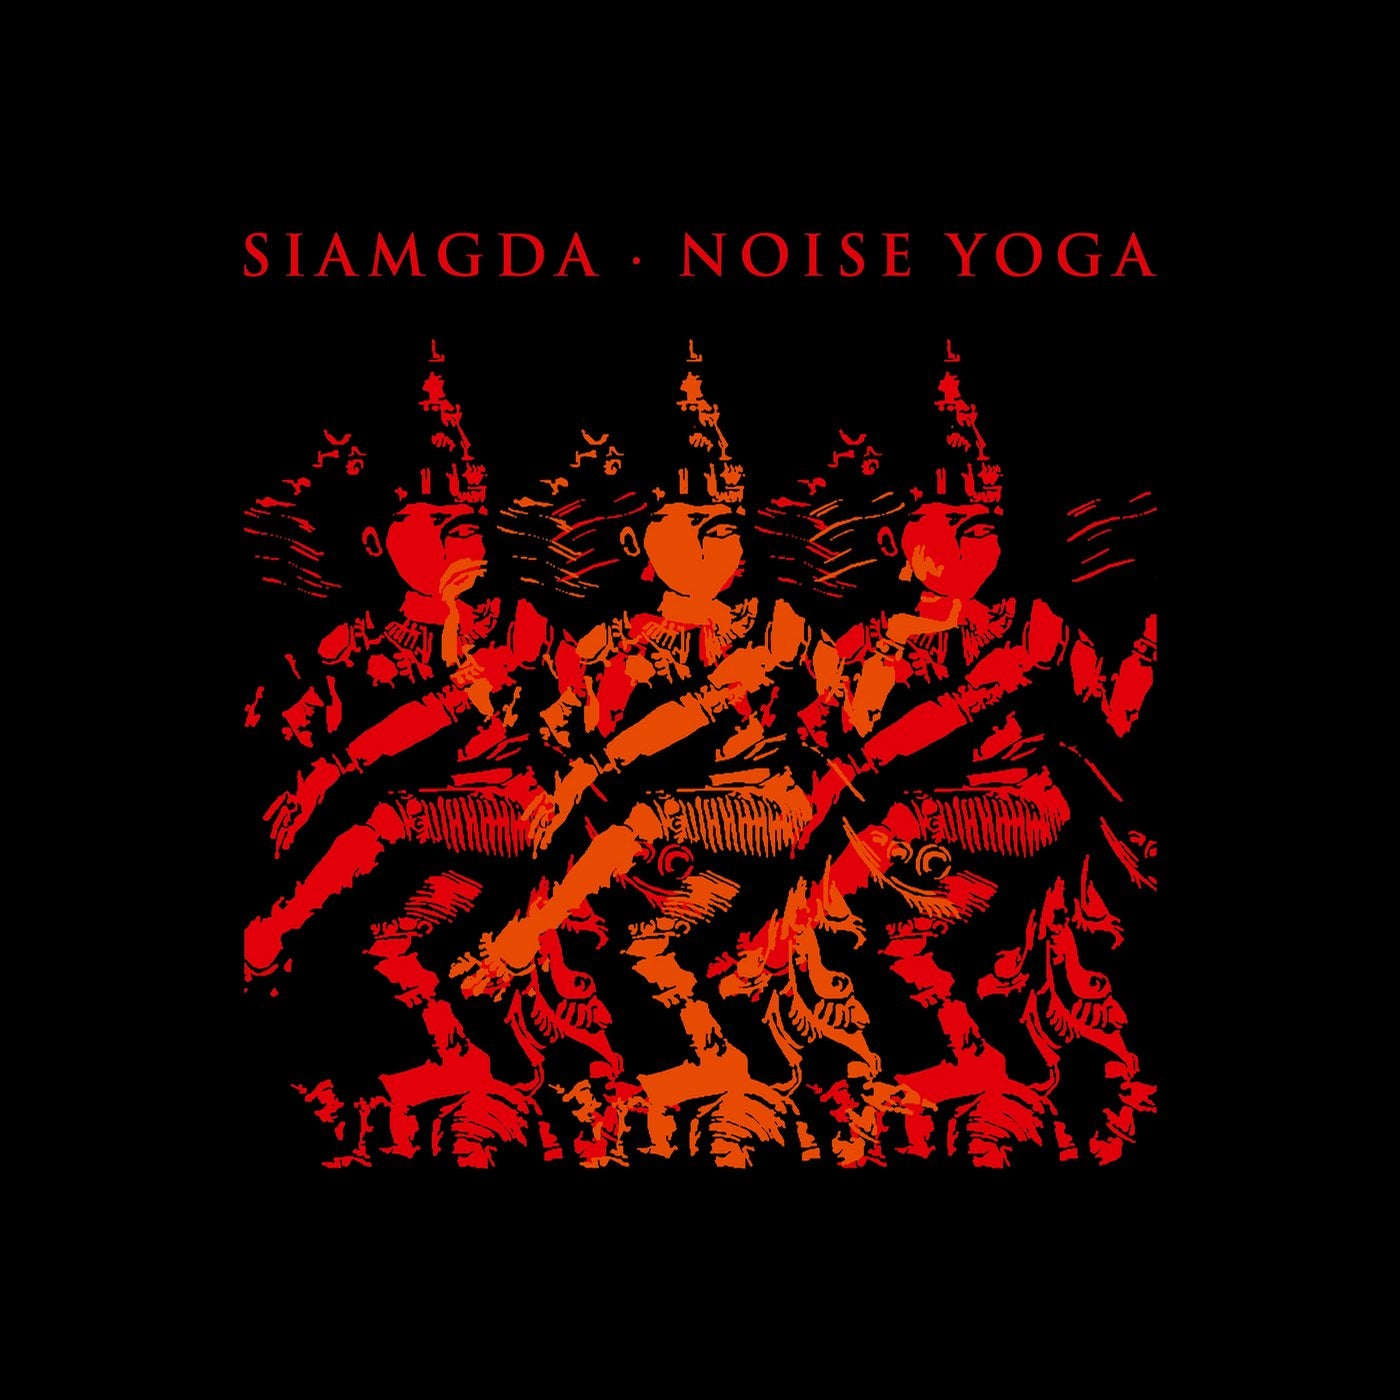 Noise Yoga